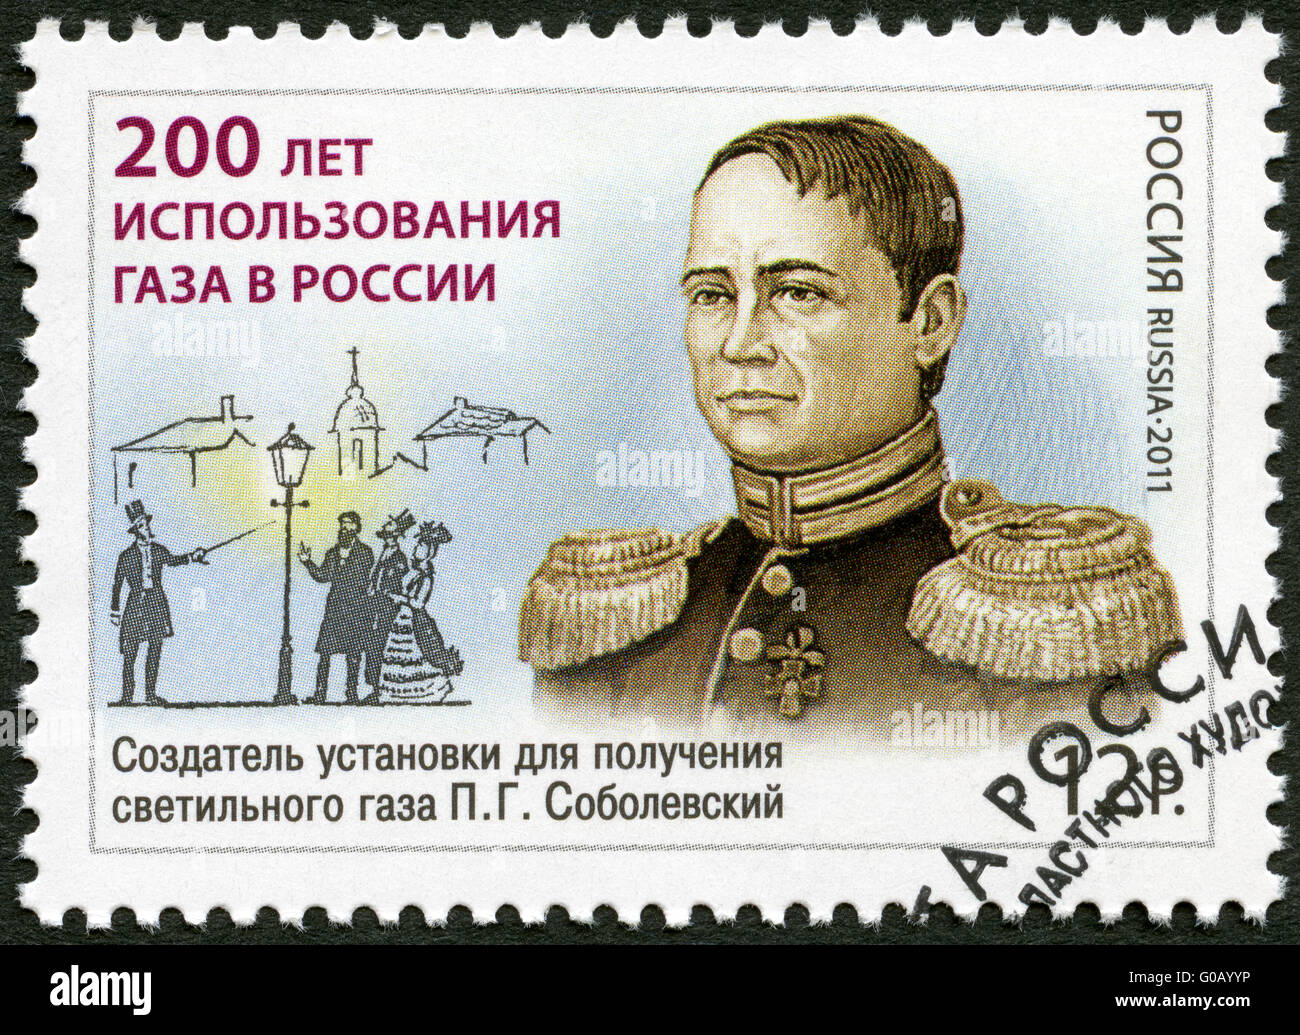 Russie - 2011 : montre P.G. Sobolevsky (1781-1841), le 200 anniversaire de l'utilisation du gaz en Russie Banque D'Images